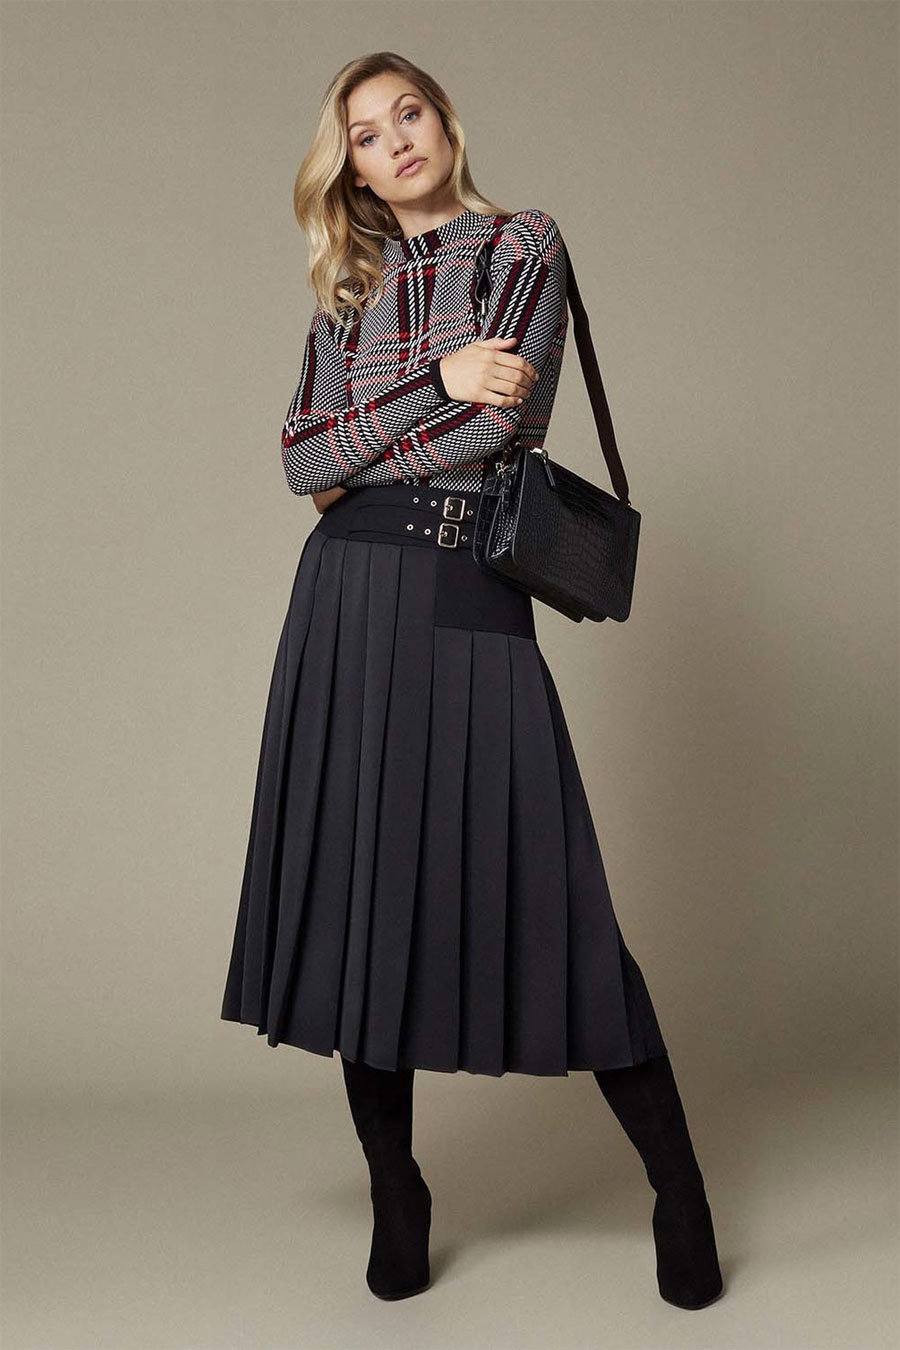 Karen Millen Waist Emphasis Pleated Skirt